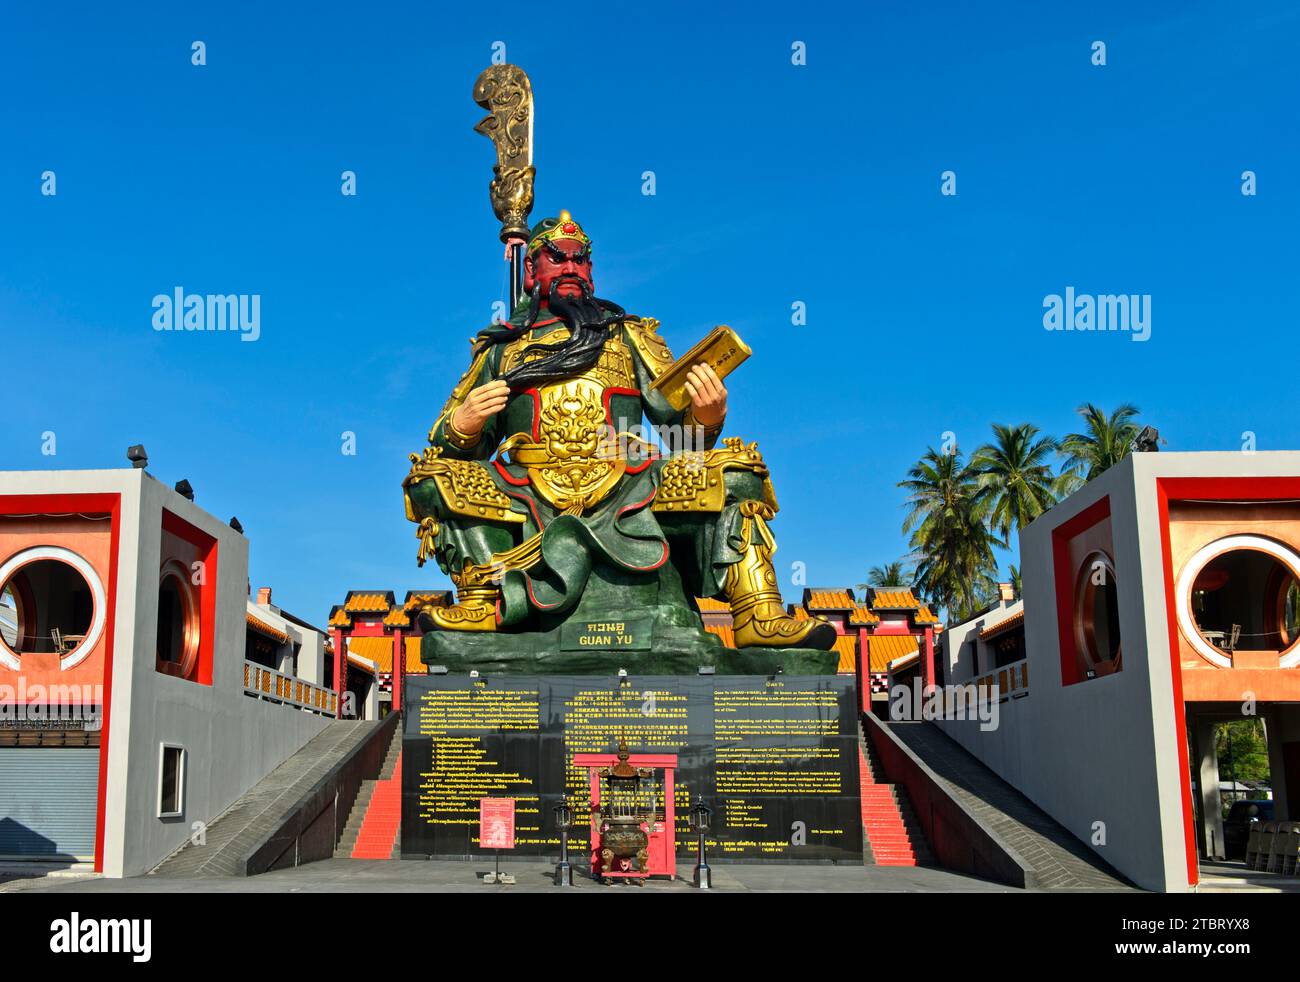 Guan Yu-Schrein mit der Bronzestatue des chinesischen Generals Guan Yu, Koh Samui, Thailand Stockfoto